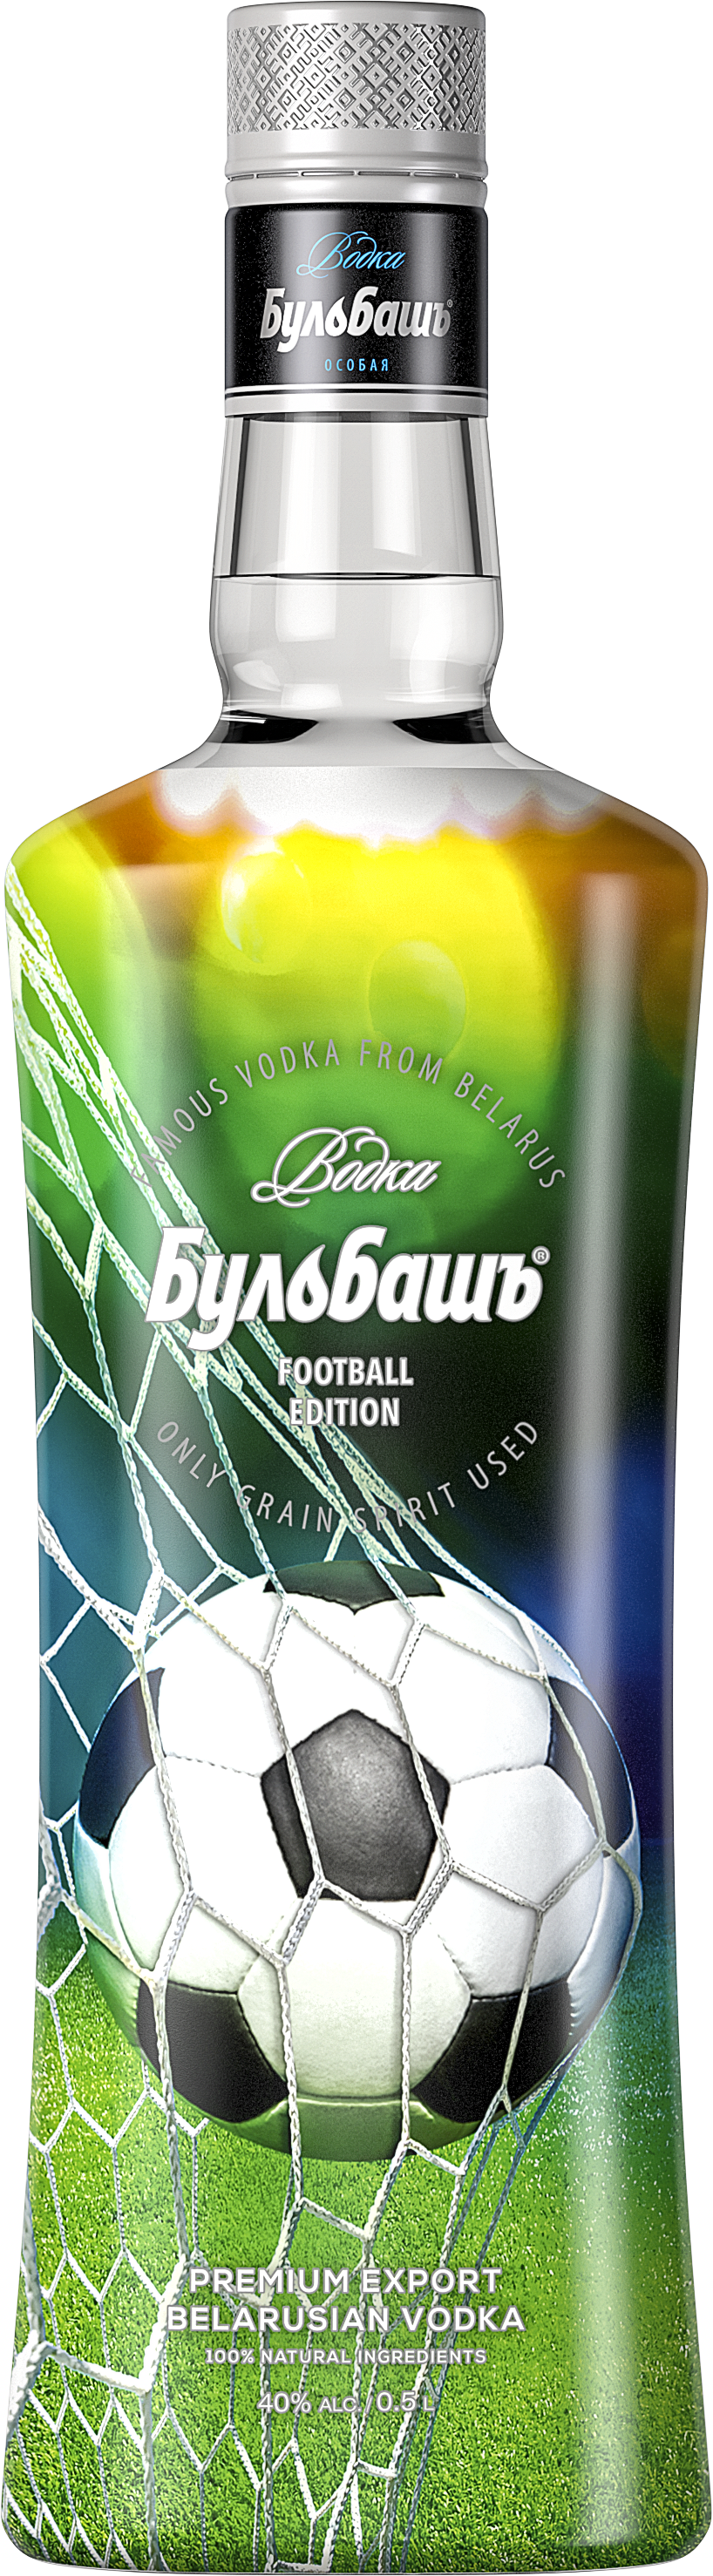 Bulbash® Football Edition 2018